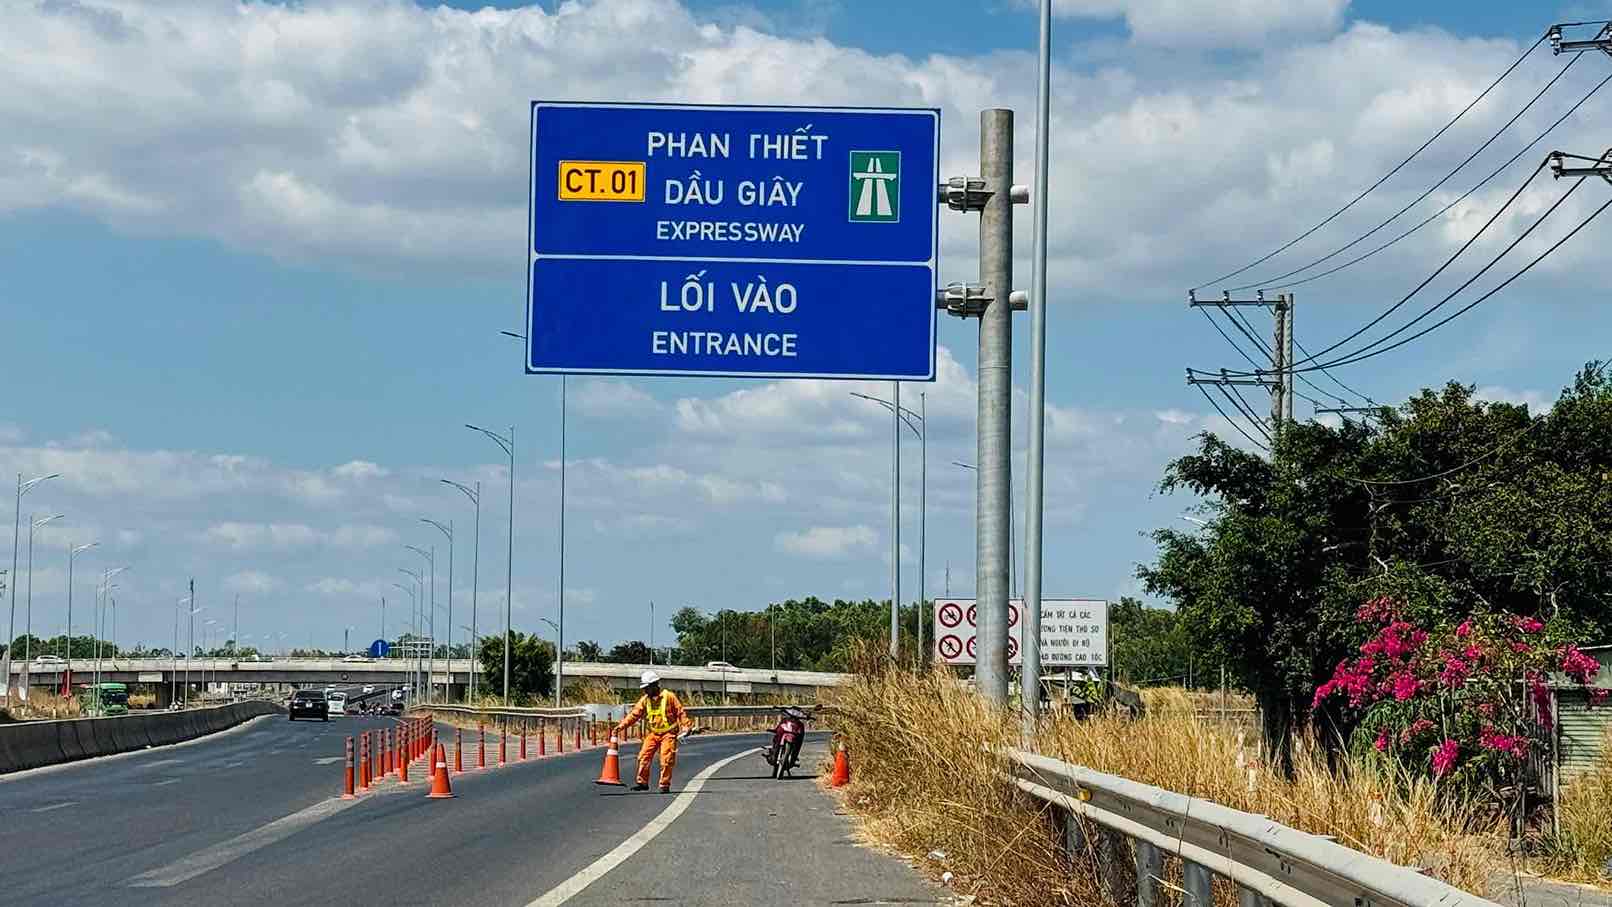 Lối vào cao tốc Phan Thiết - Dầu Giây tạm thời bị chặn để hạn chế lưu lượng xe vào cao tốc. Ảnh: Hà Anh Chiến